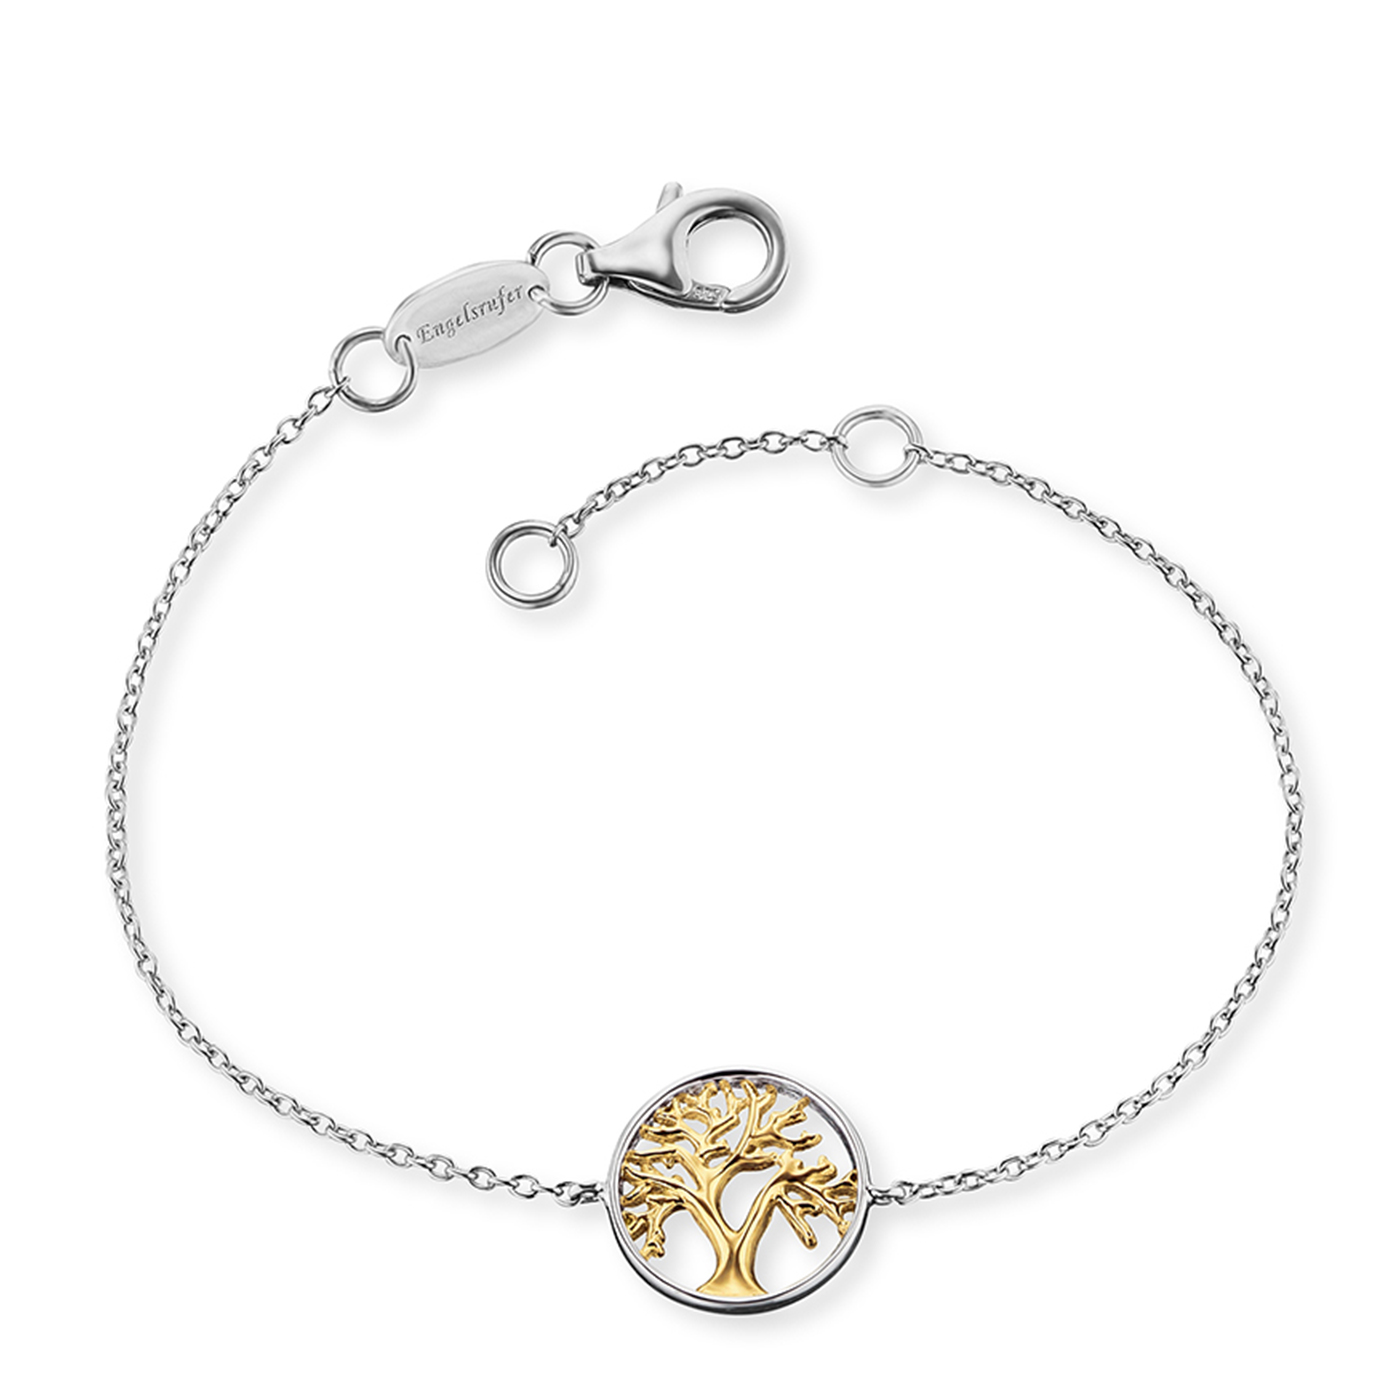 Engelsrufer Lebensbaum & Lebensblume Bracelet 925 SIlber gold plated 17+2cm